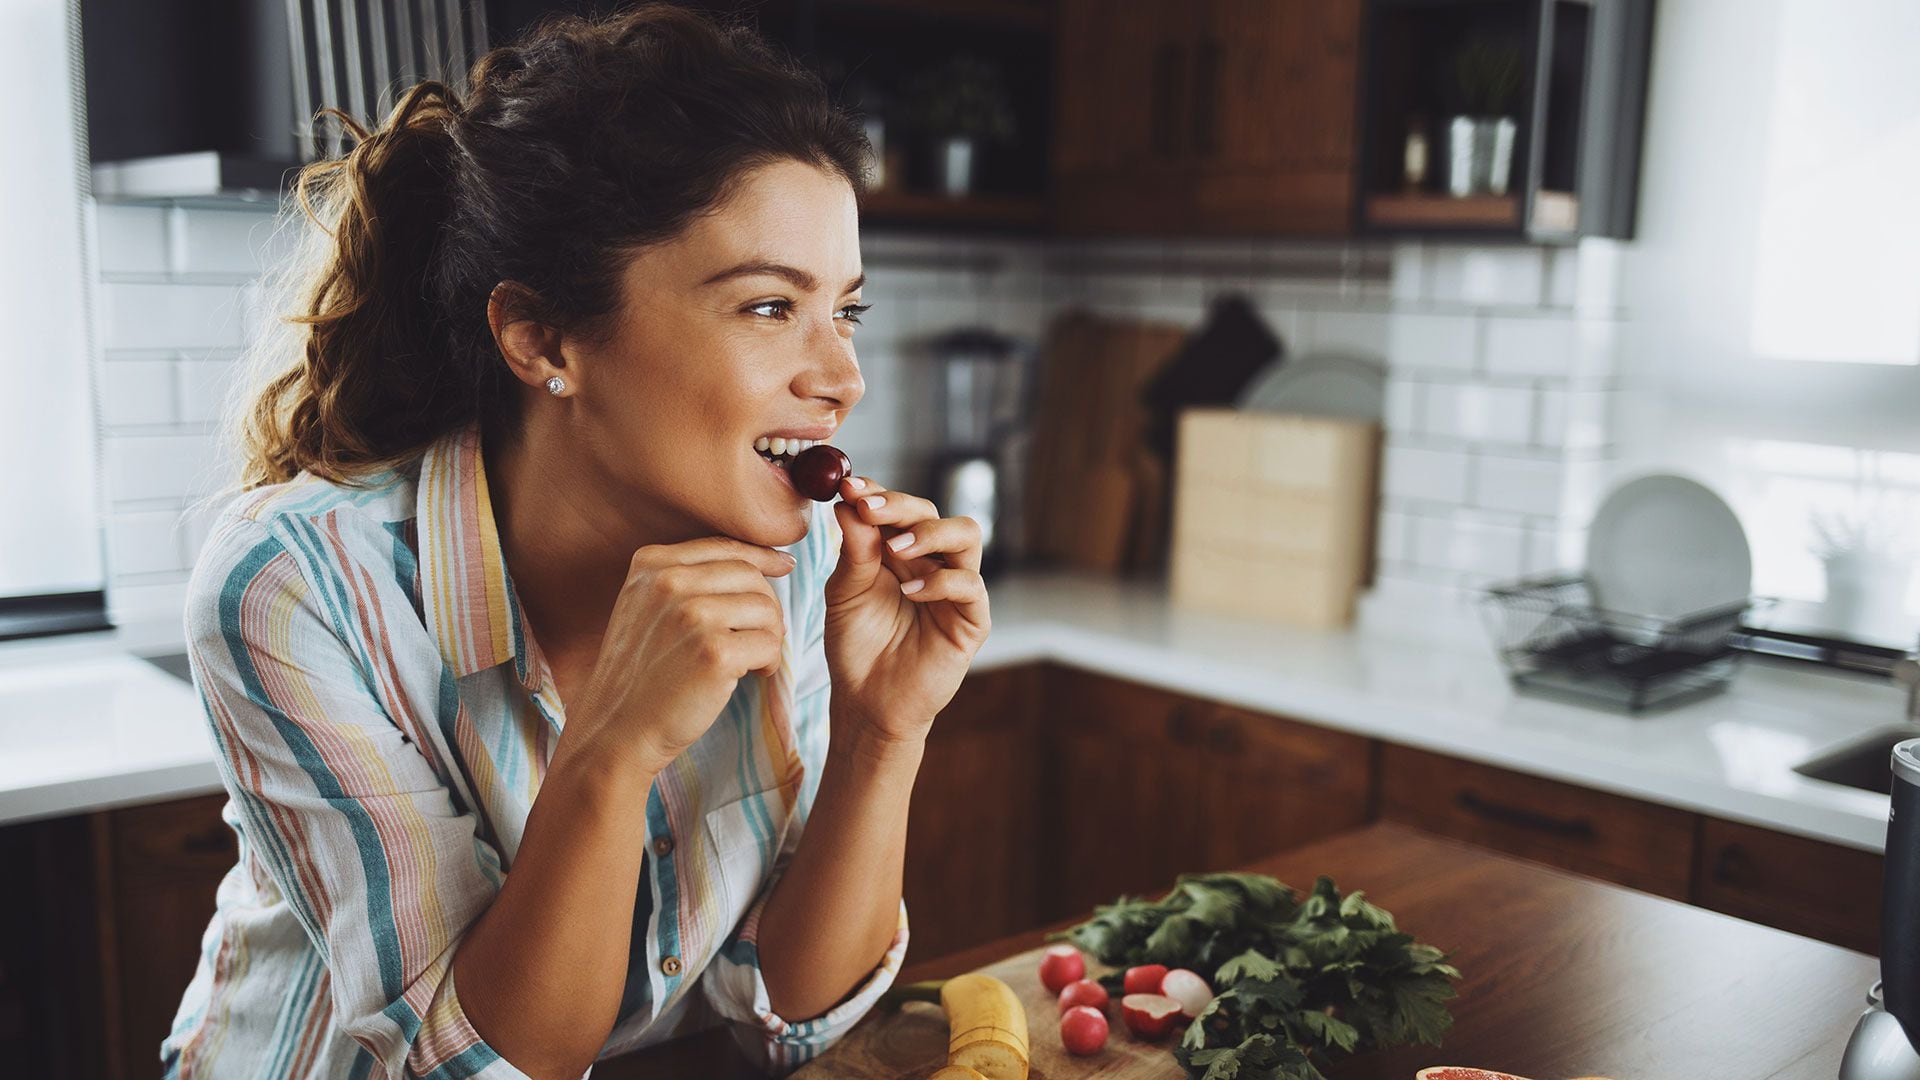 Si en lugar de golosinas o chocolates, se tienen a mano frutas u otras opciones saludables, el deseo de dulce se saciará sin poner en riesgo la salud (Getty)